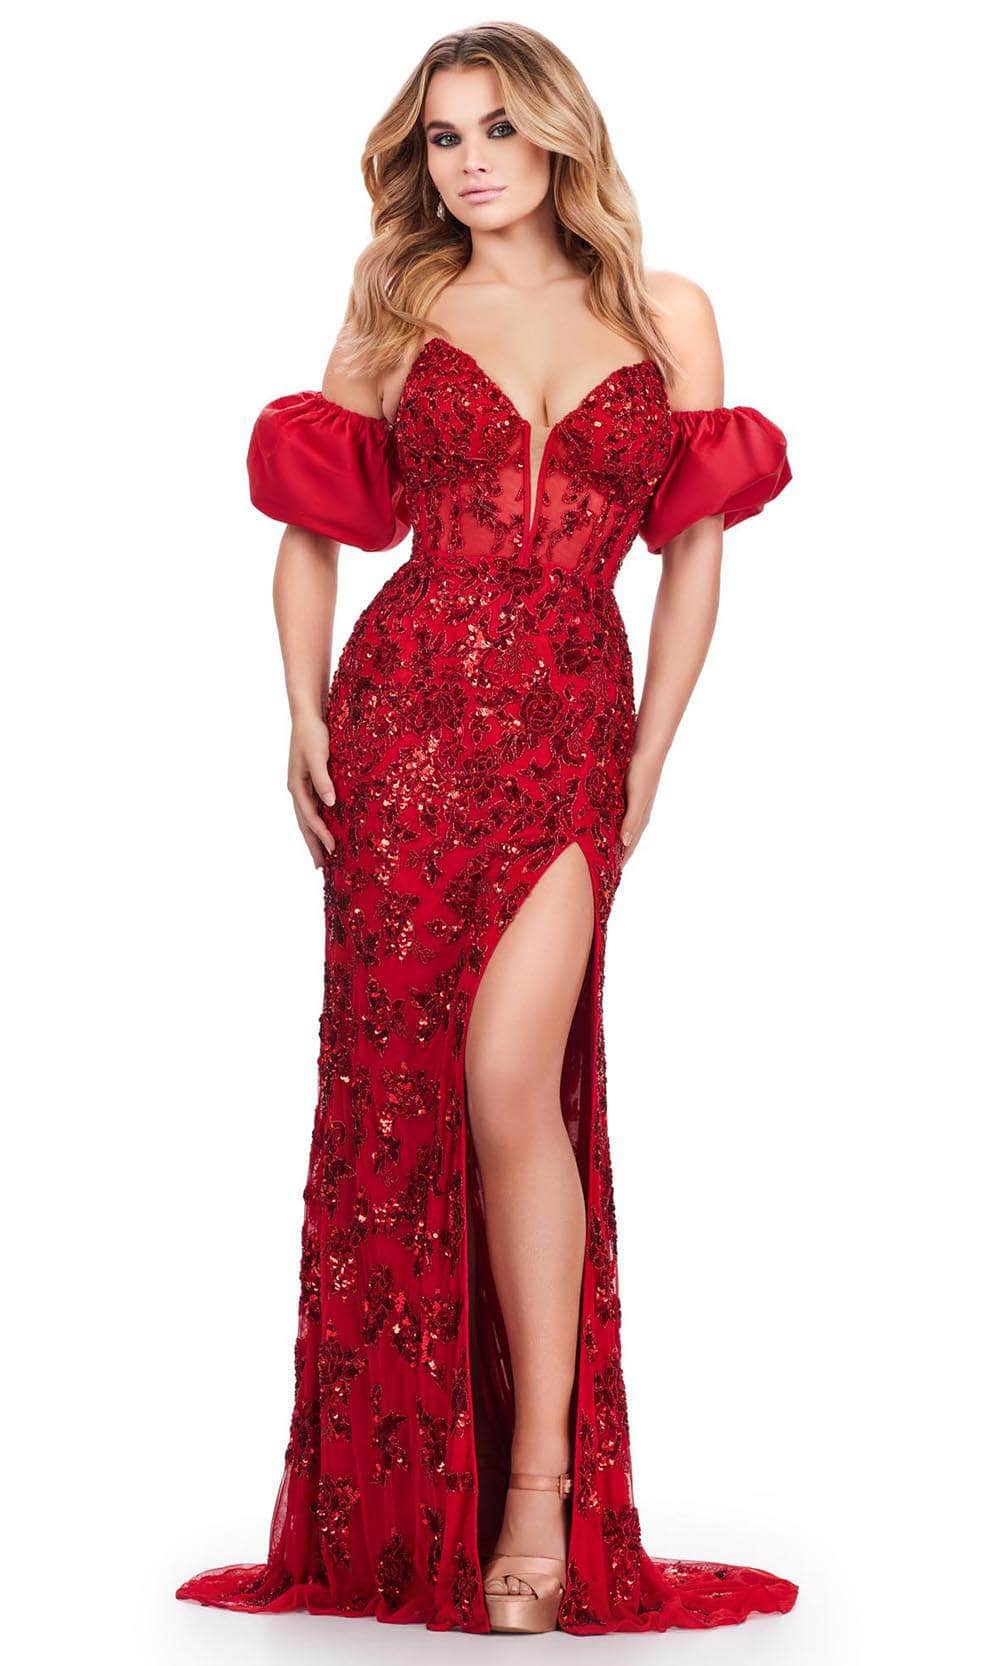 Ashley Lauren 11585 - Sequin Ornate Prom Dress 00 /  Red